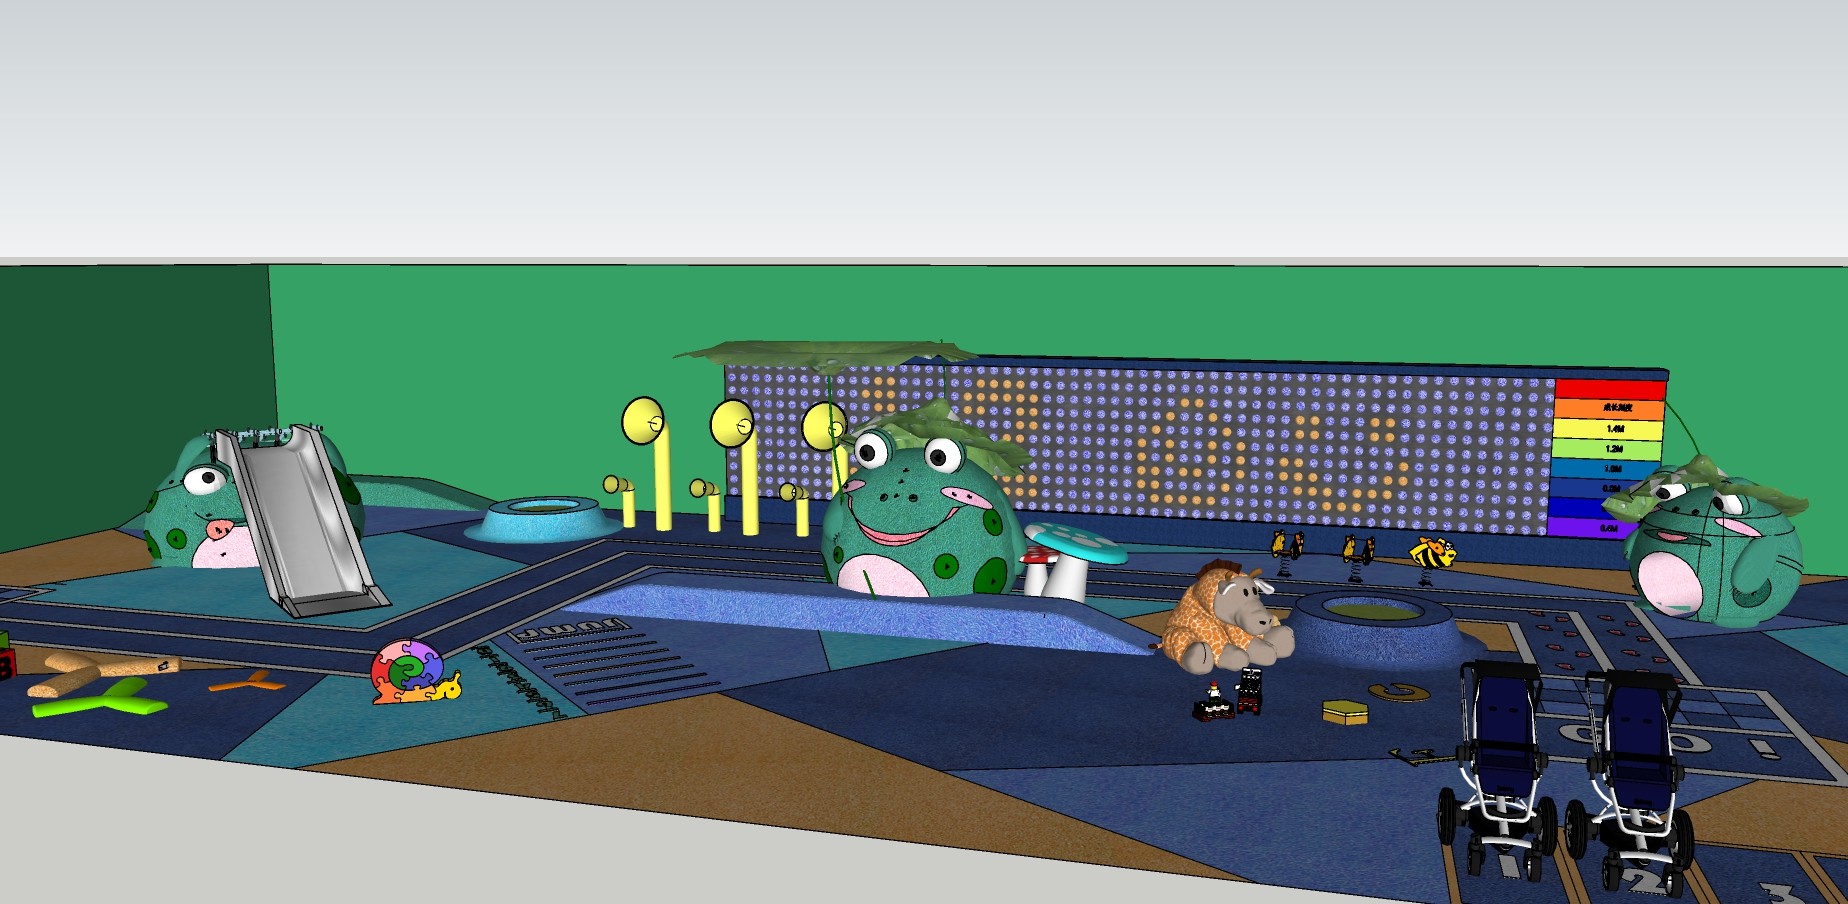 36儿童活动区 游乐场 滑梯 布偶道具 青蛙道具  沙池  钓鱼池su草图模型下载